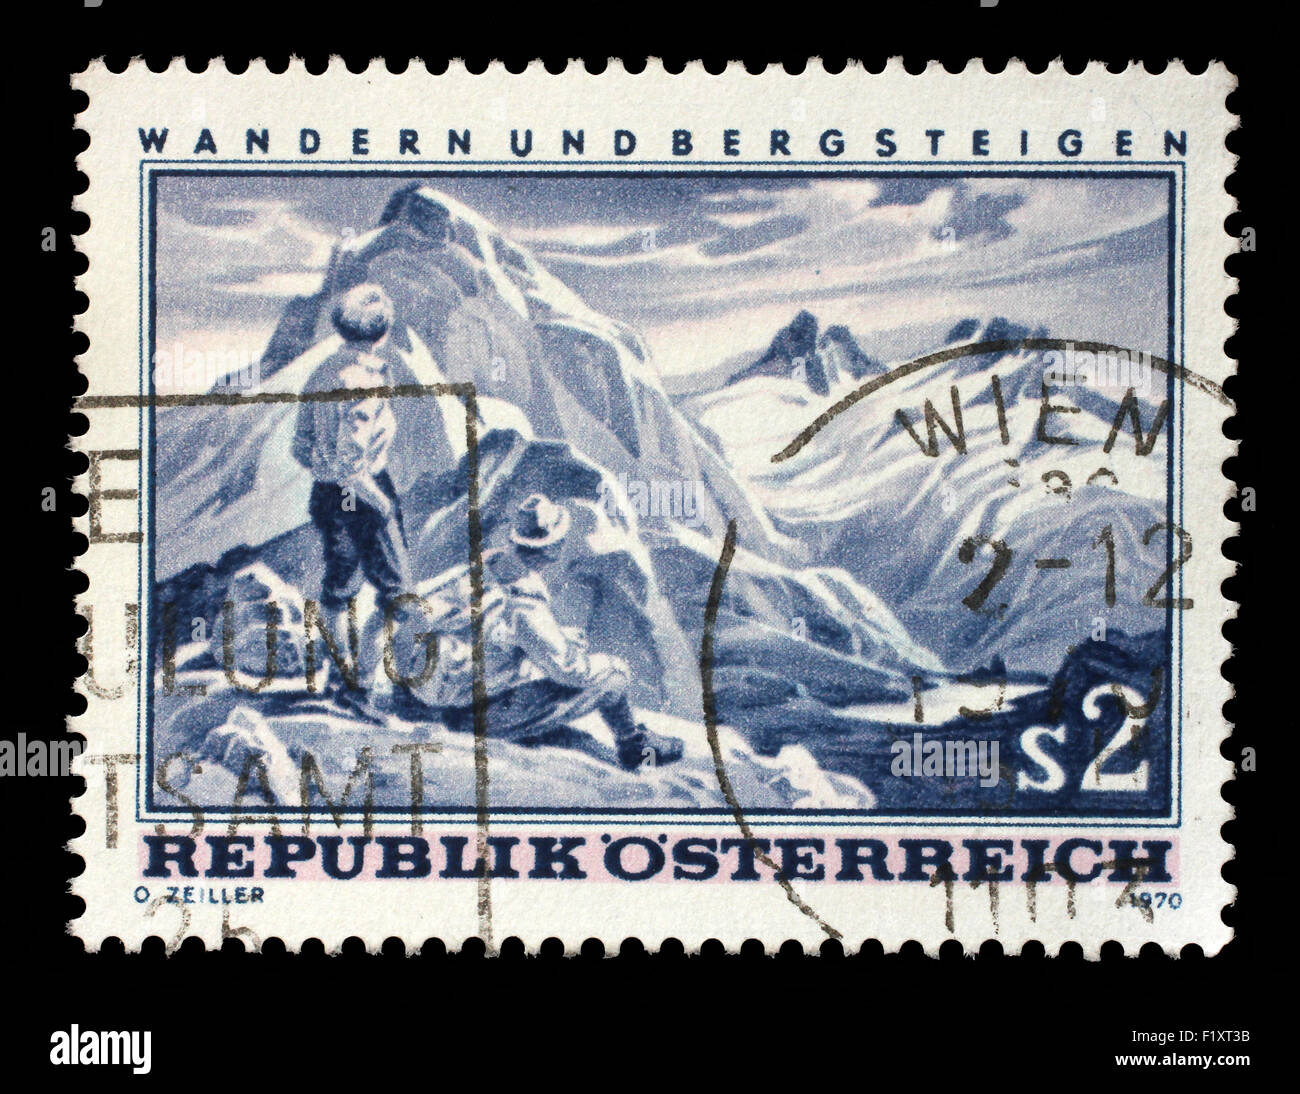 Timbres en l'Autriche montre la scène de montagne, la randonnée et l'Alpinisme en Autriche, vers 1970 Banque D'Images